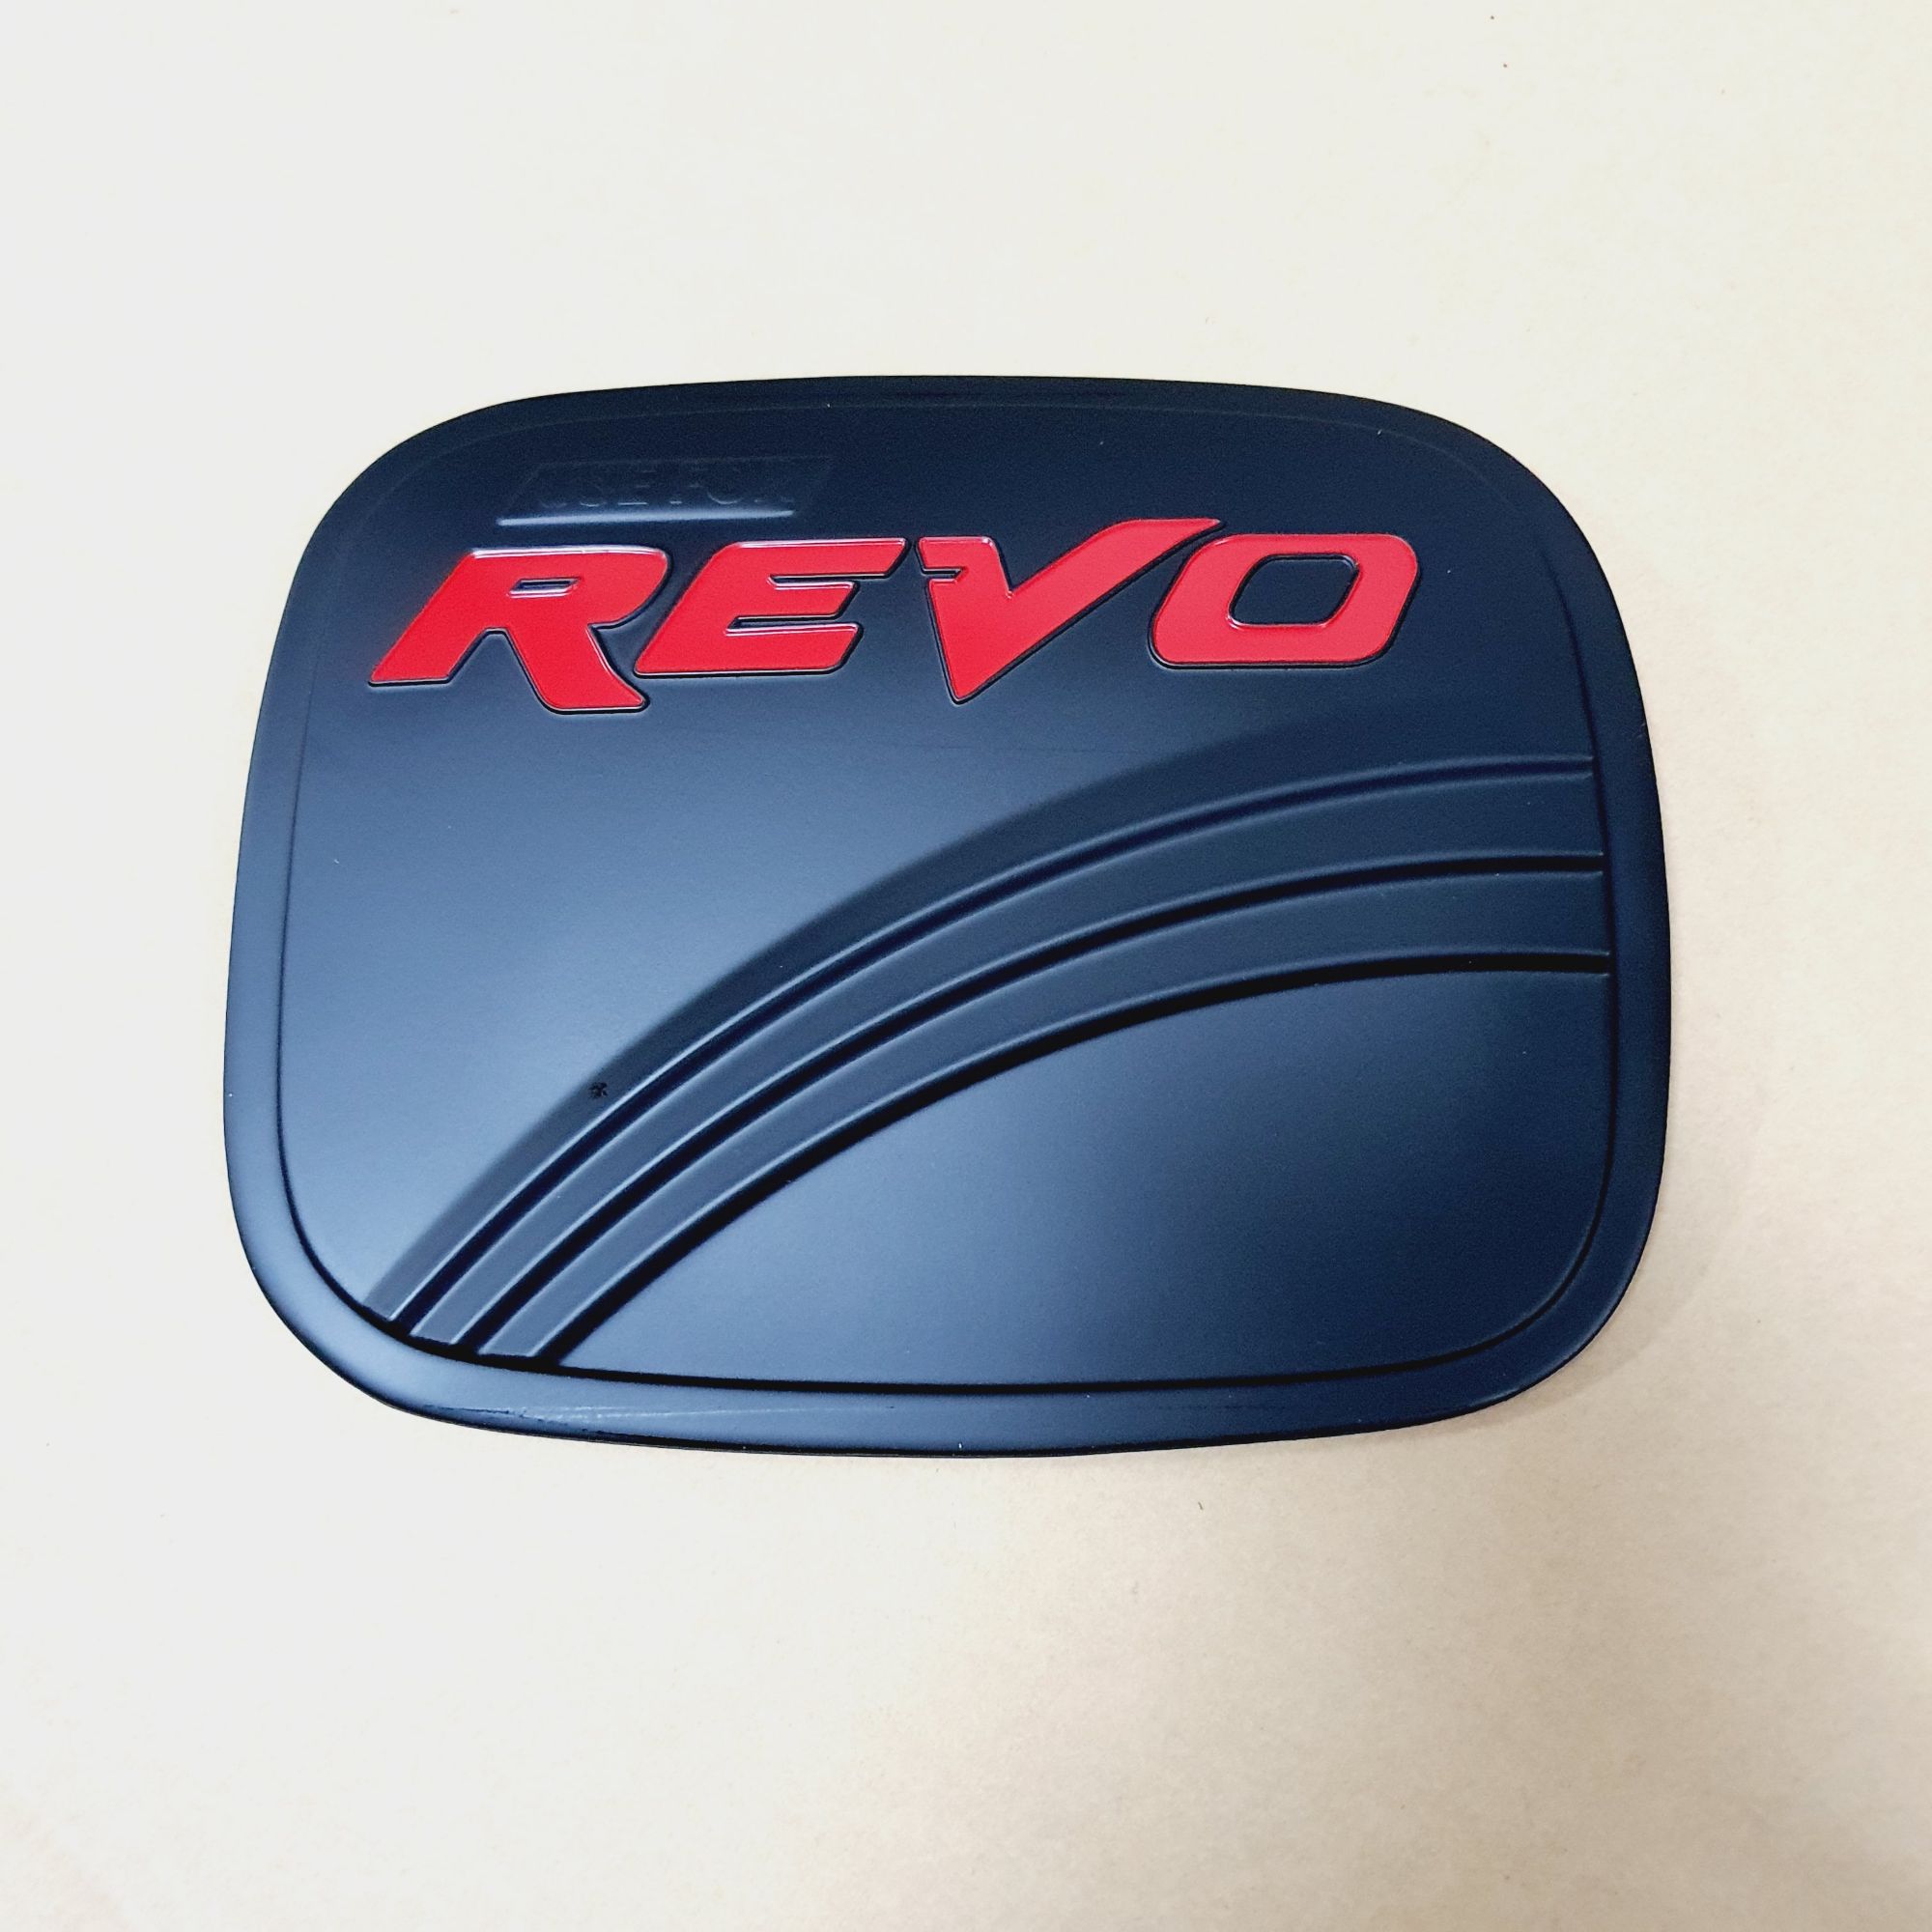 ครอบฝาถังน้ำมัน Toyota Revo ดำด้านโลโก้แดง มีทั้งตัวสูงและตัวเตี้ย ใส่ปี 2015 ถึง 2024